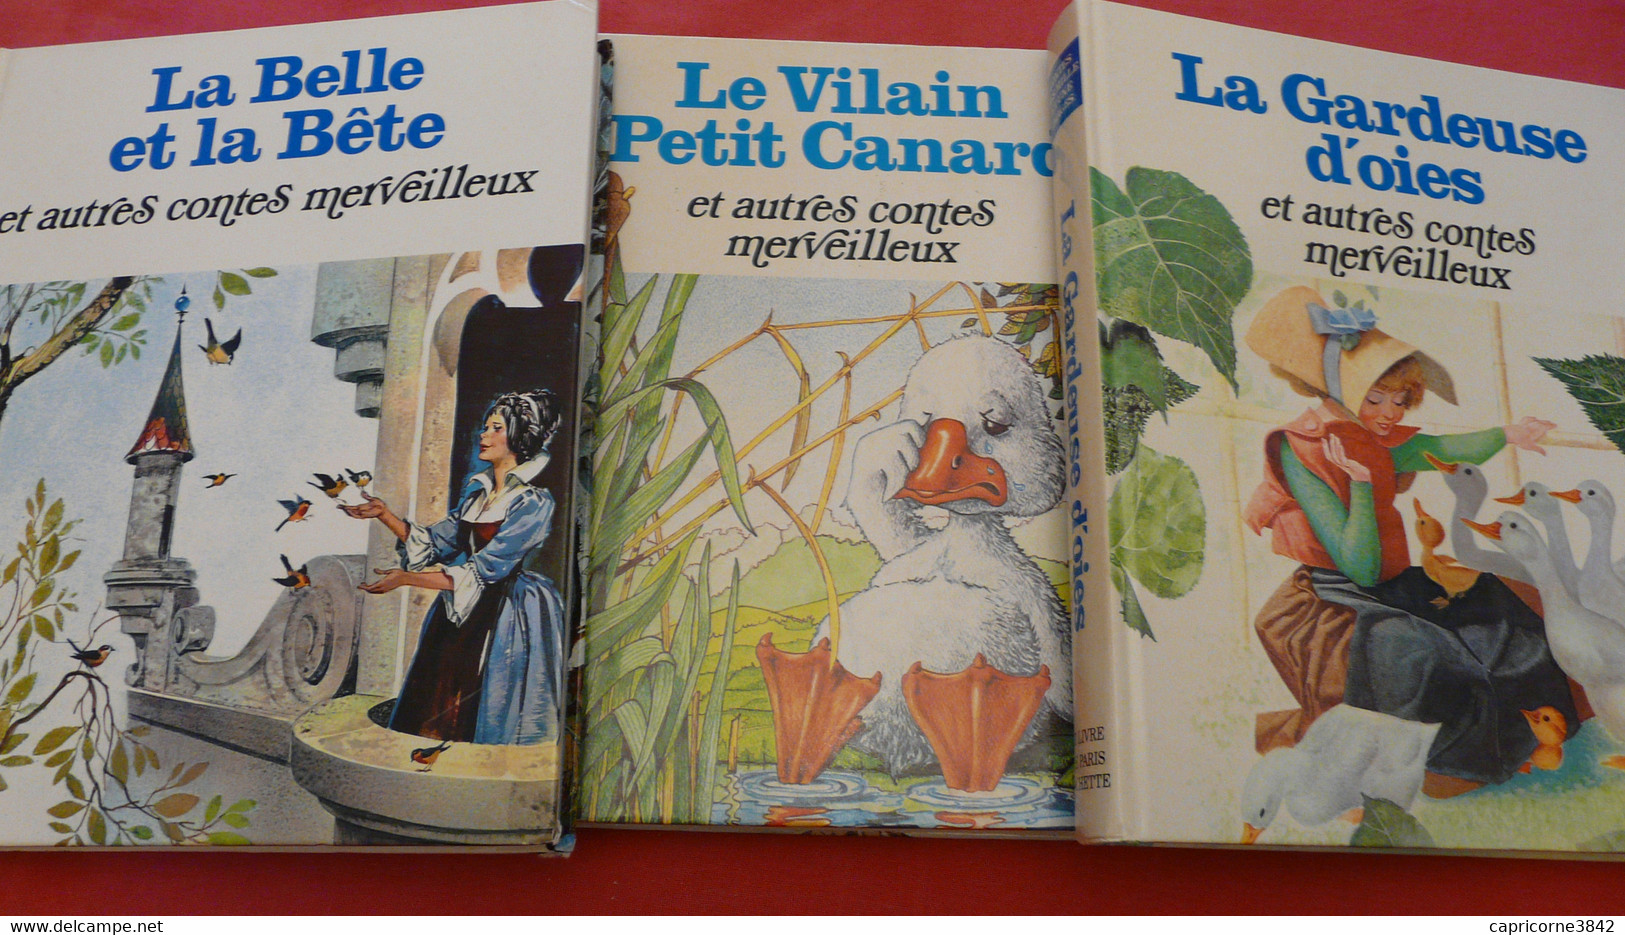 3 Beaux Livres De Contes LA GARDEUSE D'OIES - LE VILAIN PETIT CANARD - LA BELLE ET LA BÊTE - Env. 15 Contes Par Livre - Contes